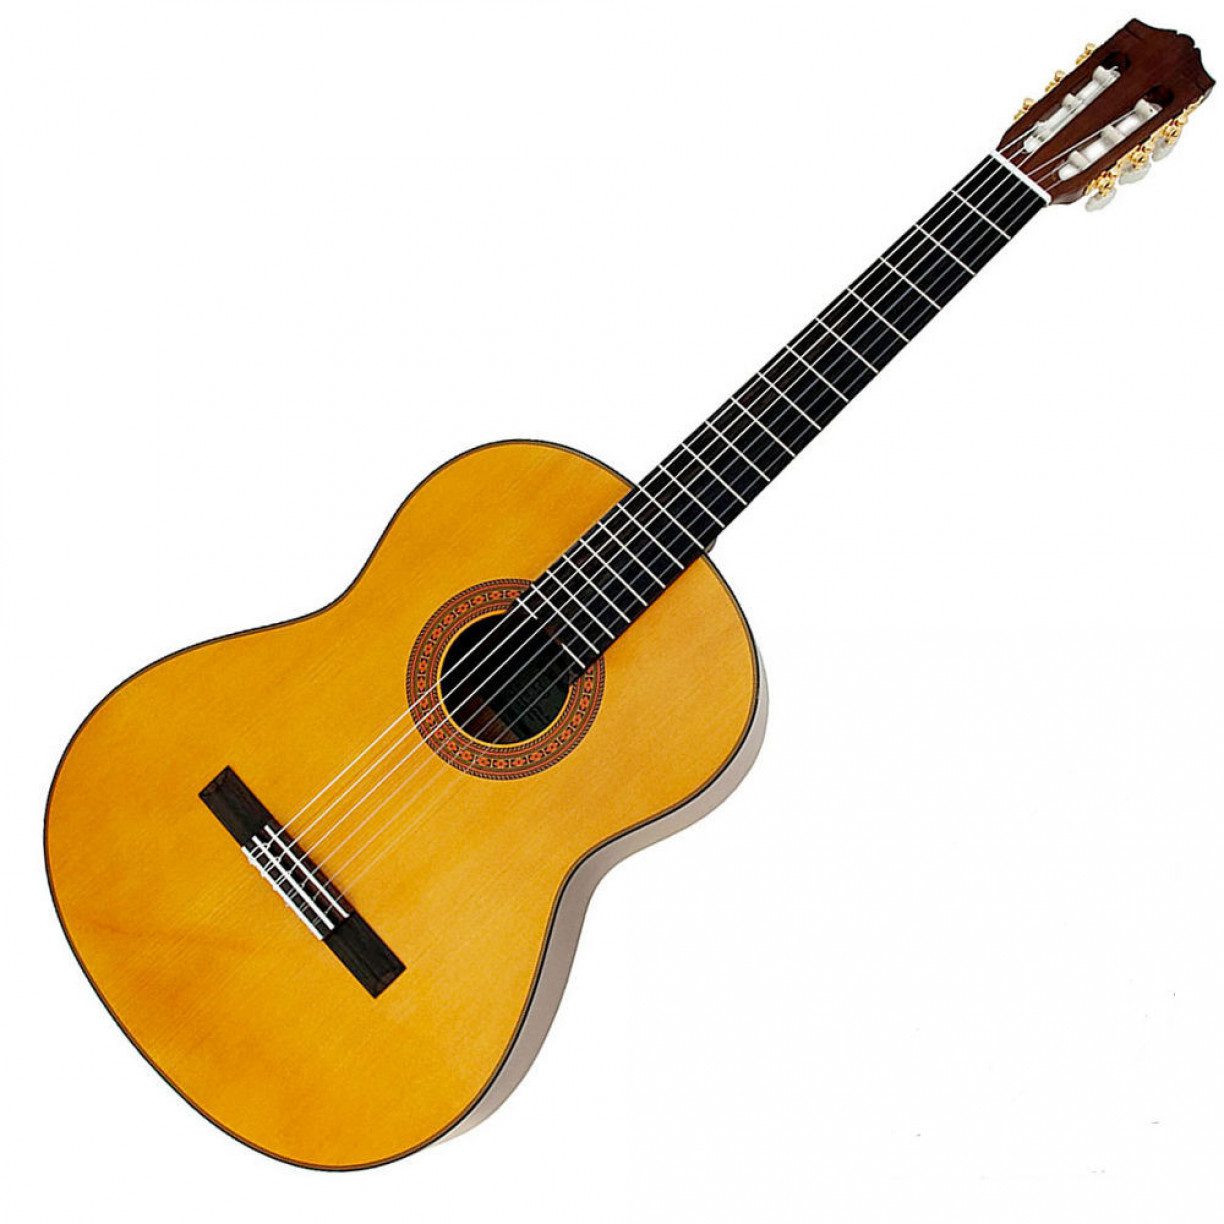 Yamaha C70 Classical Guitars - Audio Shop Dubai